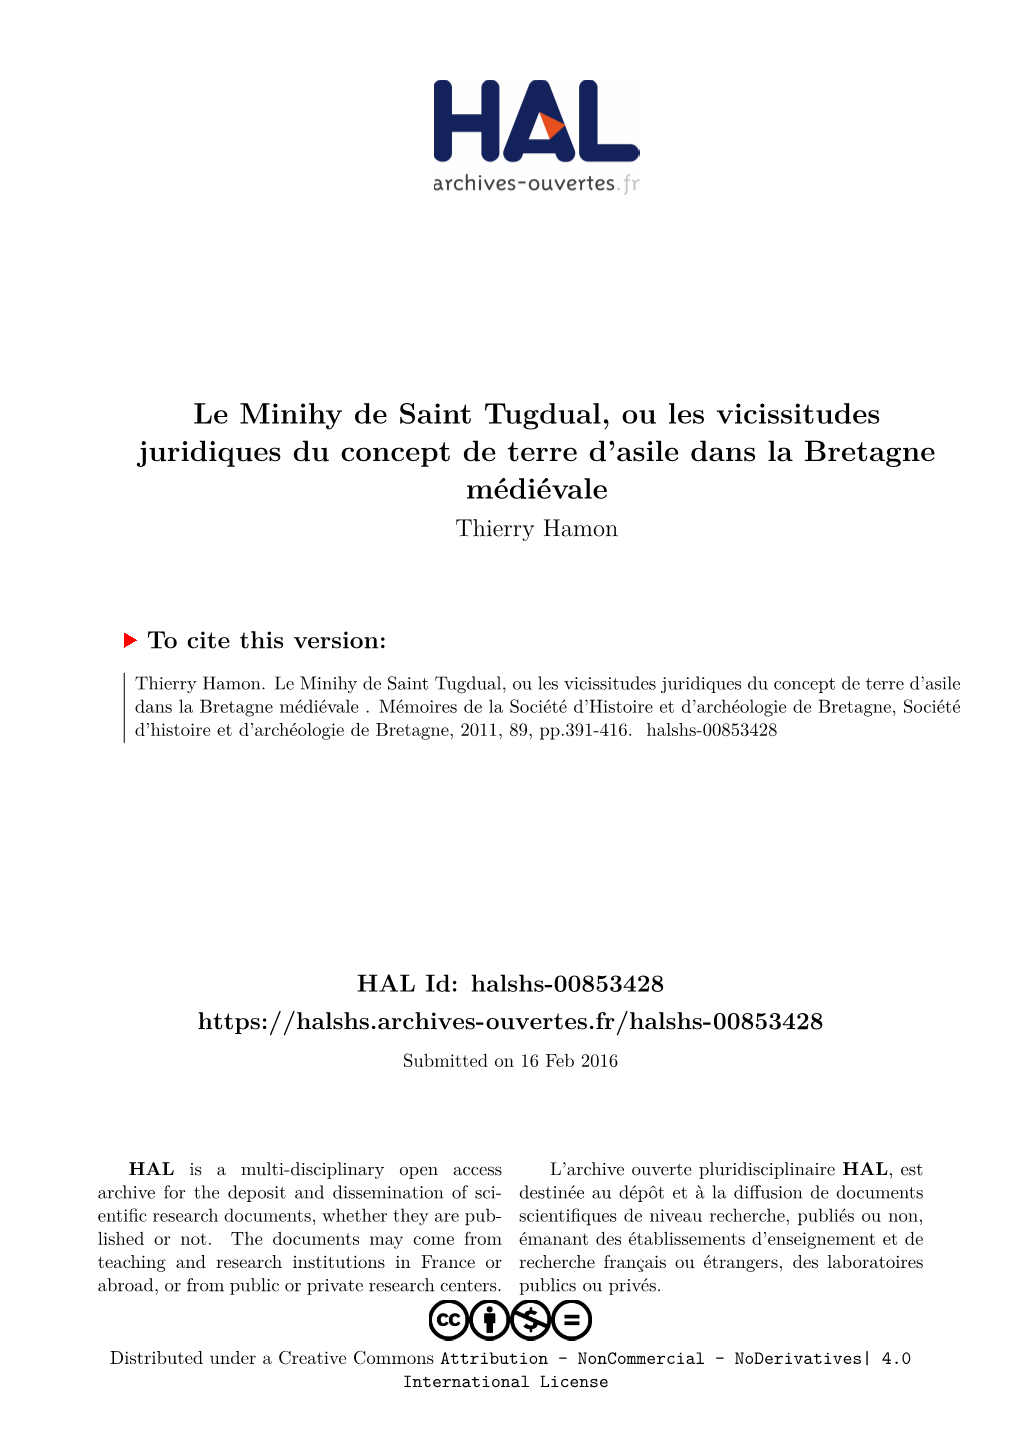 Le Minihy De Saint Tugdual, Ou Les Vicissitudes Juridiques Du Concept De Terre D’Asile Dans La Bretagne Médiévale Thierry Hamon